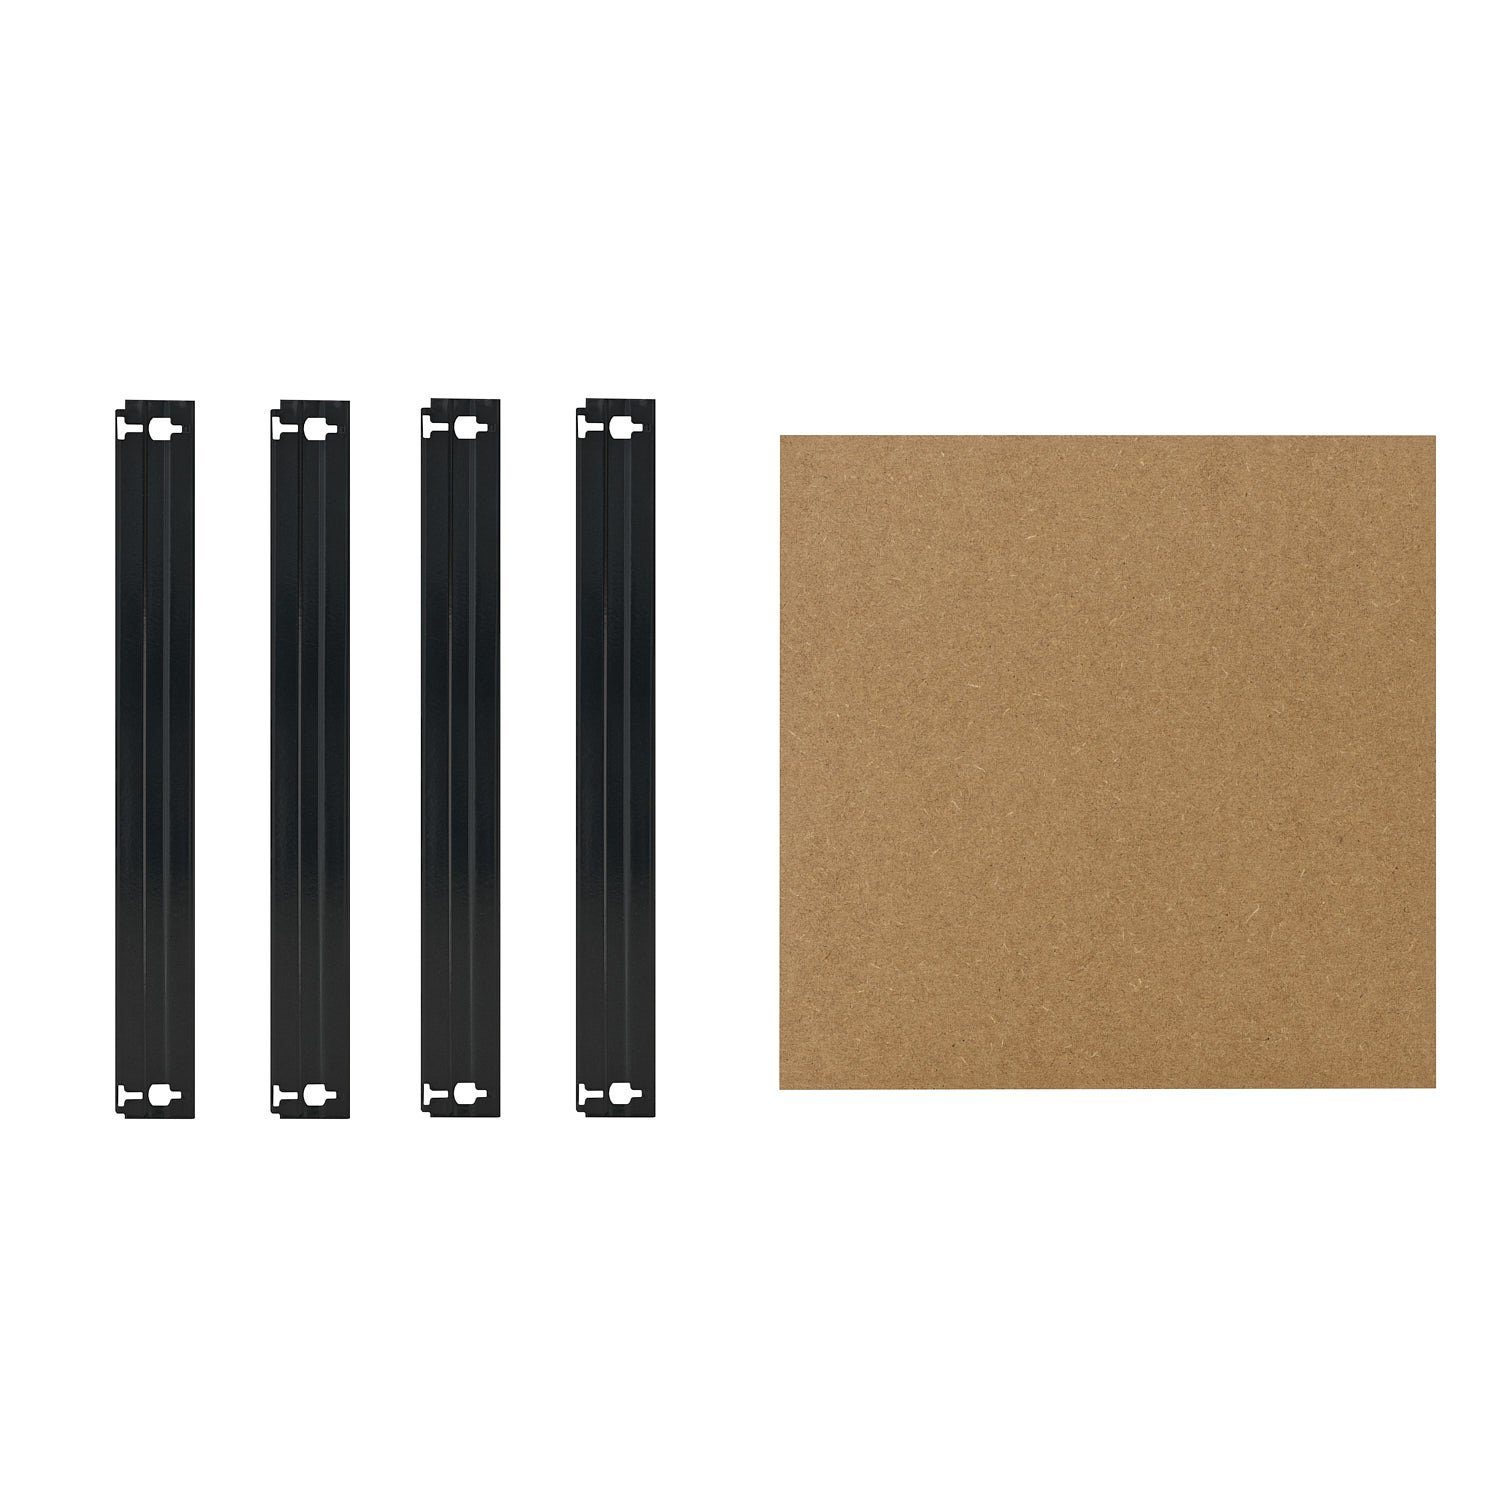 shelfplaza Schwerlastregal BLACK, Komplettes Fachboden-Set für 23x23 cm Steckregale in schwarz, HDF-Fachboden, zusätzliche Fachböden für Schwerlastregale